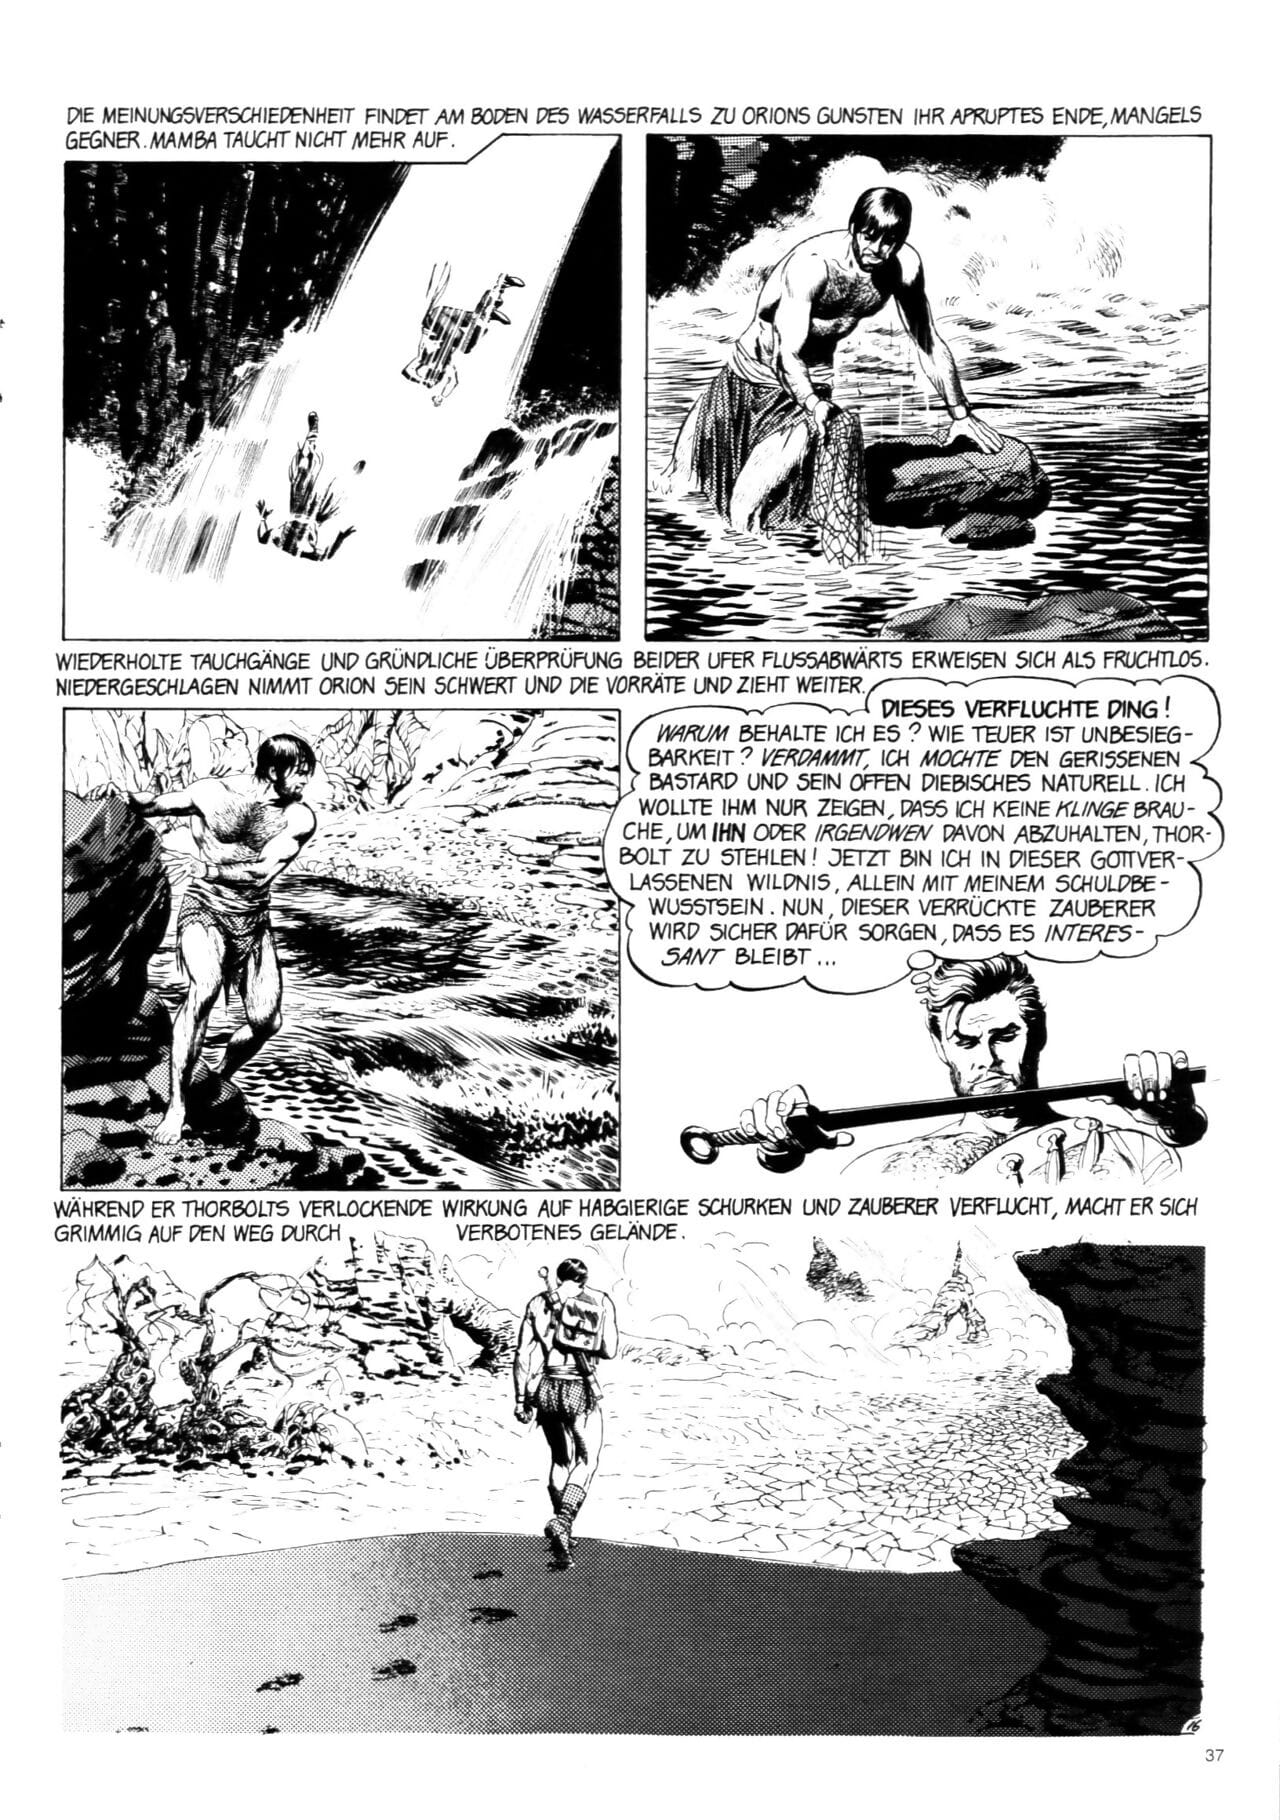 schwermetall #039 PARTIE 2 page 1